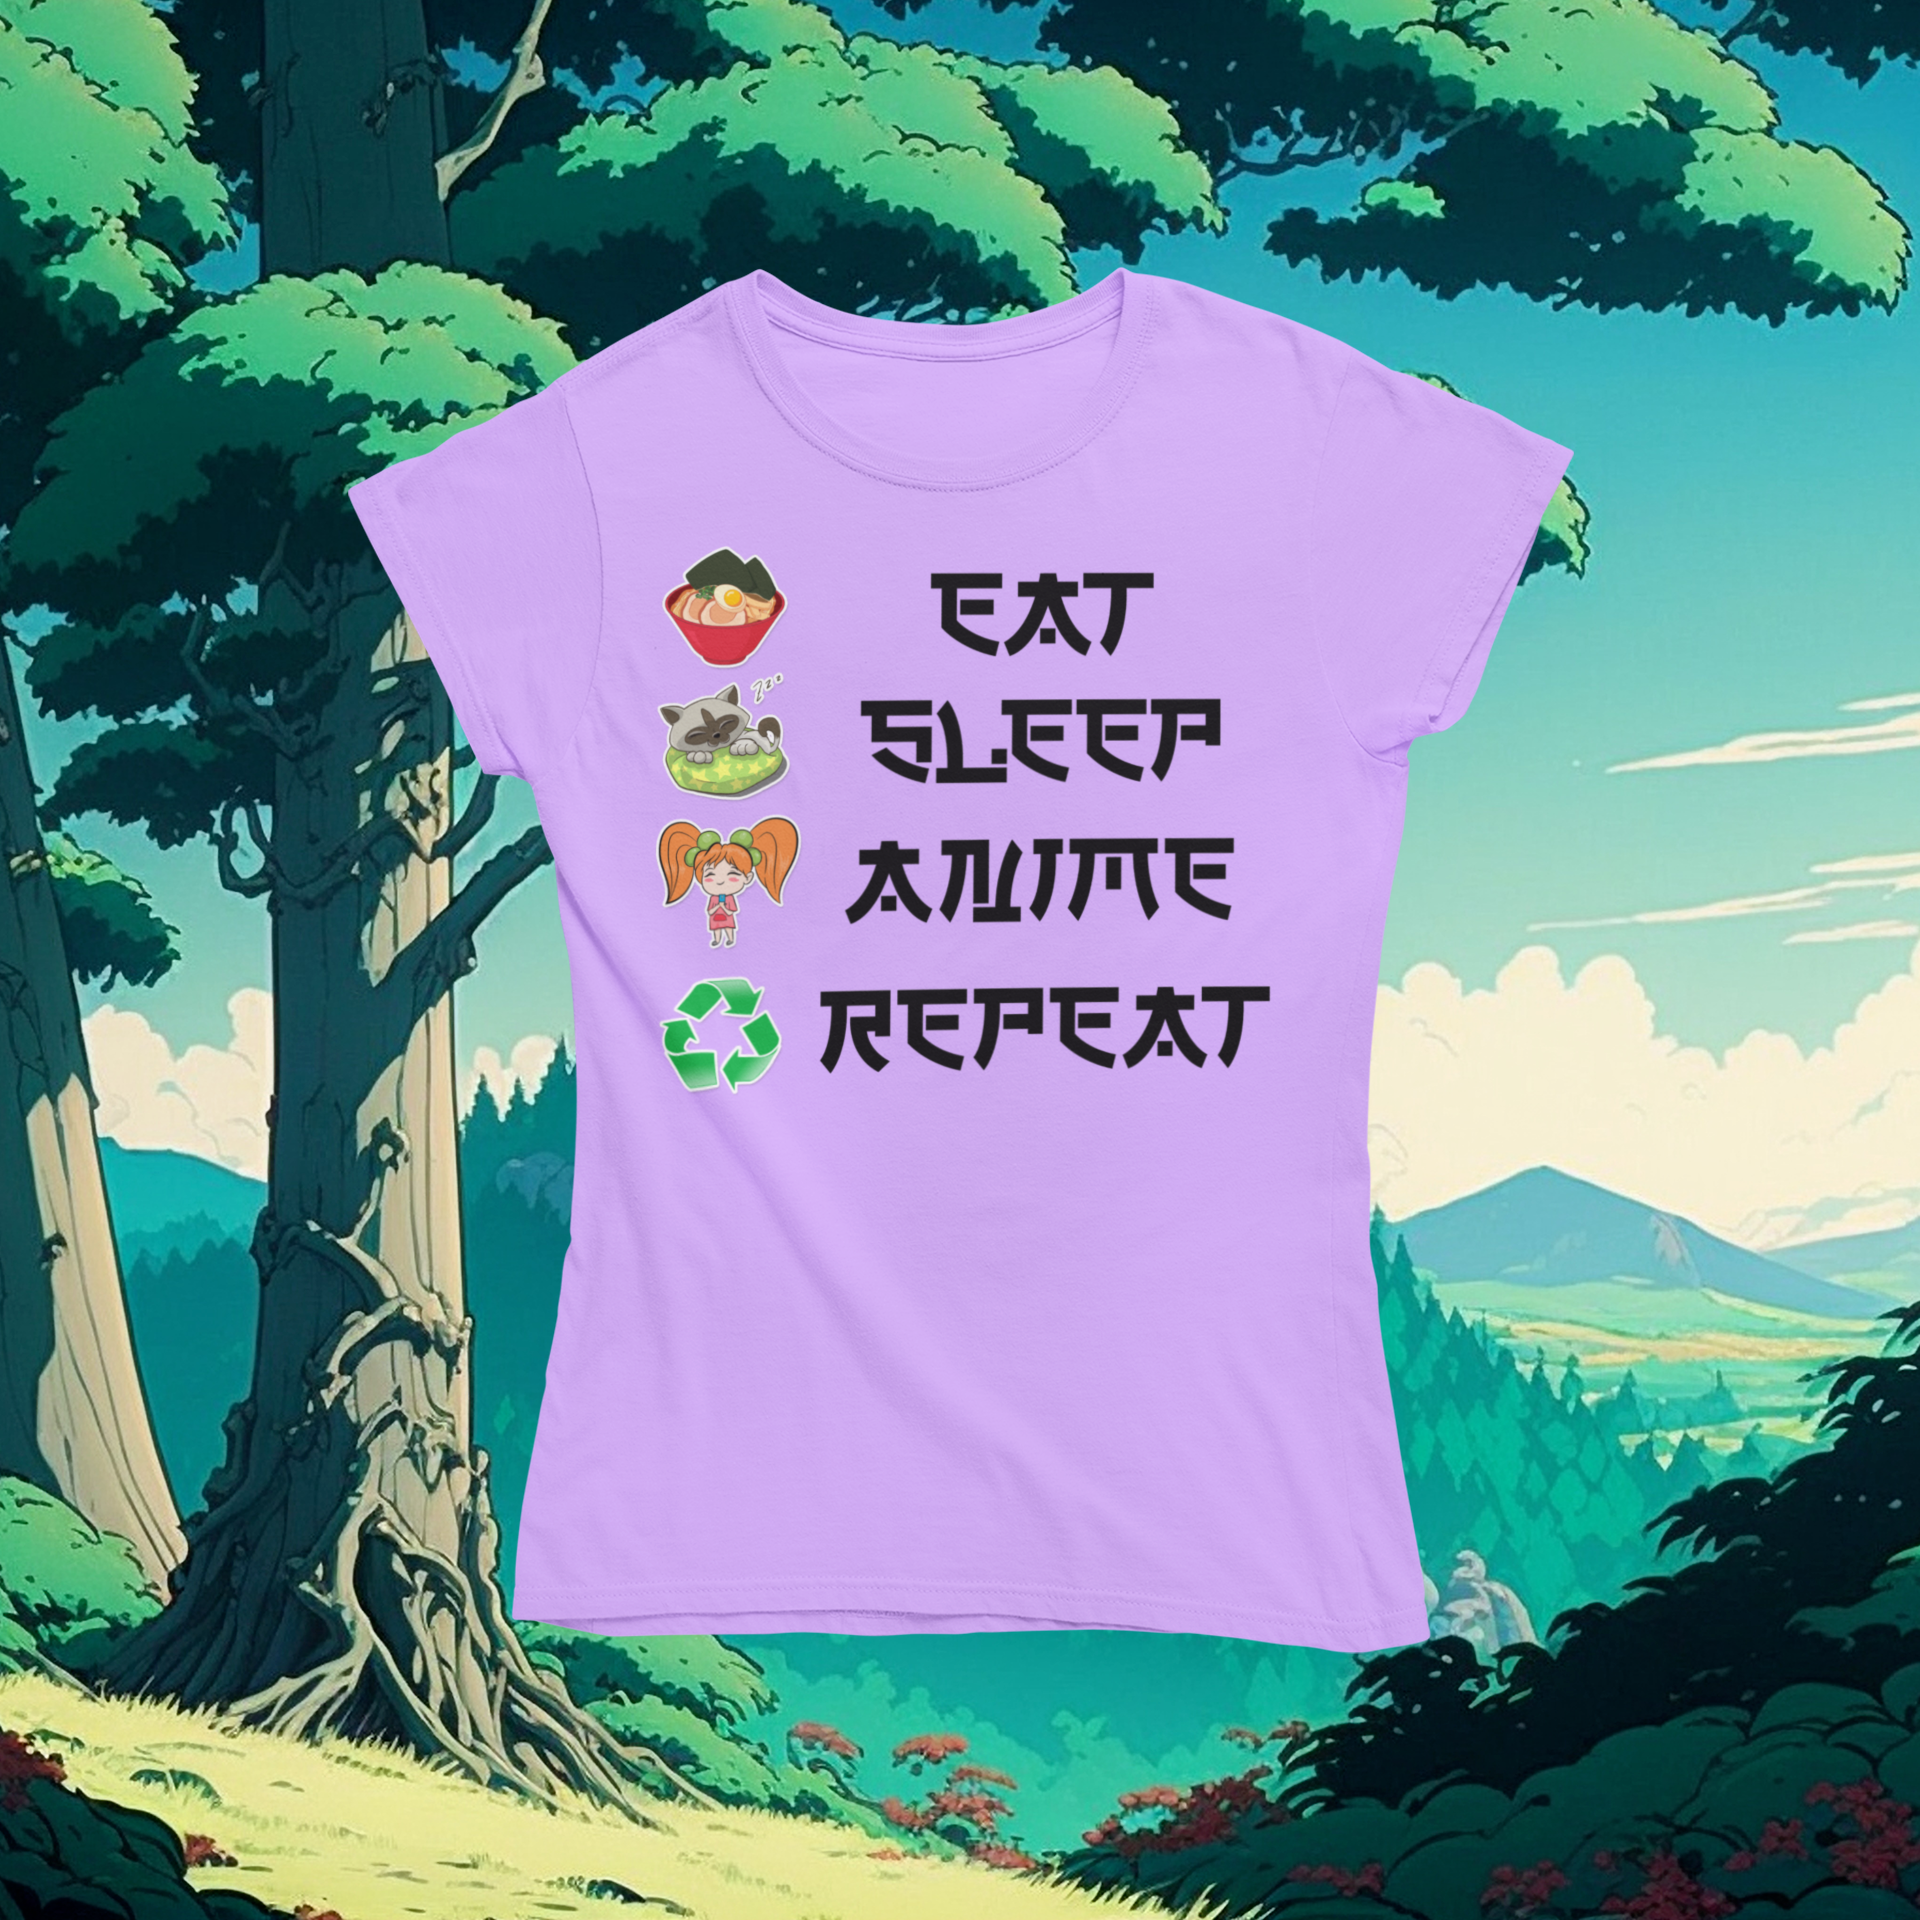 Eat Sleep Anime Repeat Tshirt or Hoodie - Wilson Design Group